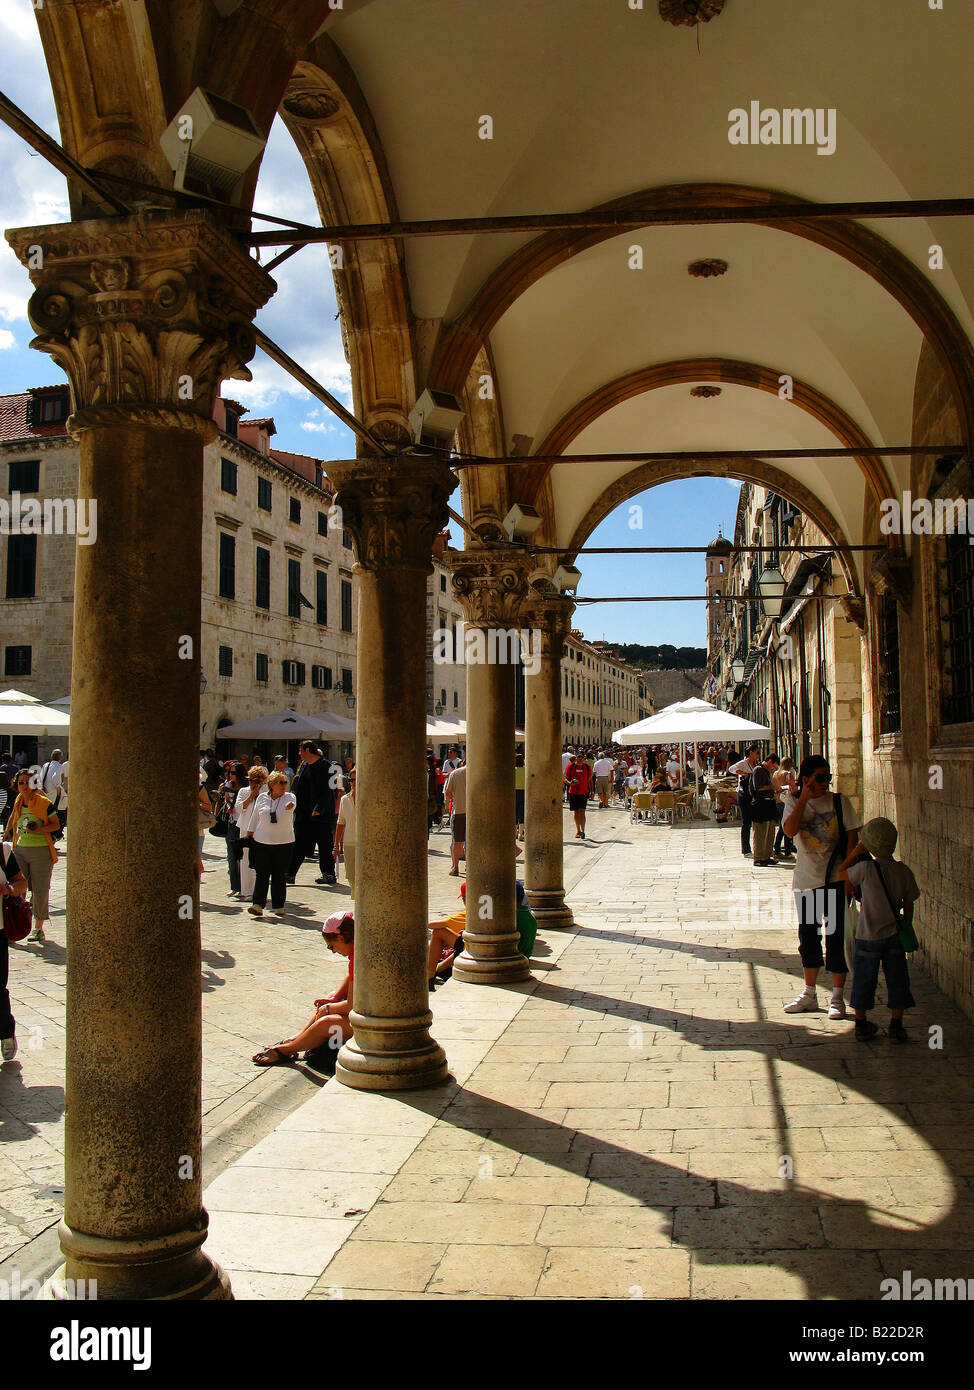 Un Archade dans la place principale dans la vieille ville de Dubrovnik, Croatie, Balkans Banque D'Images